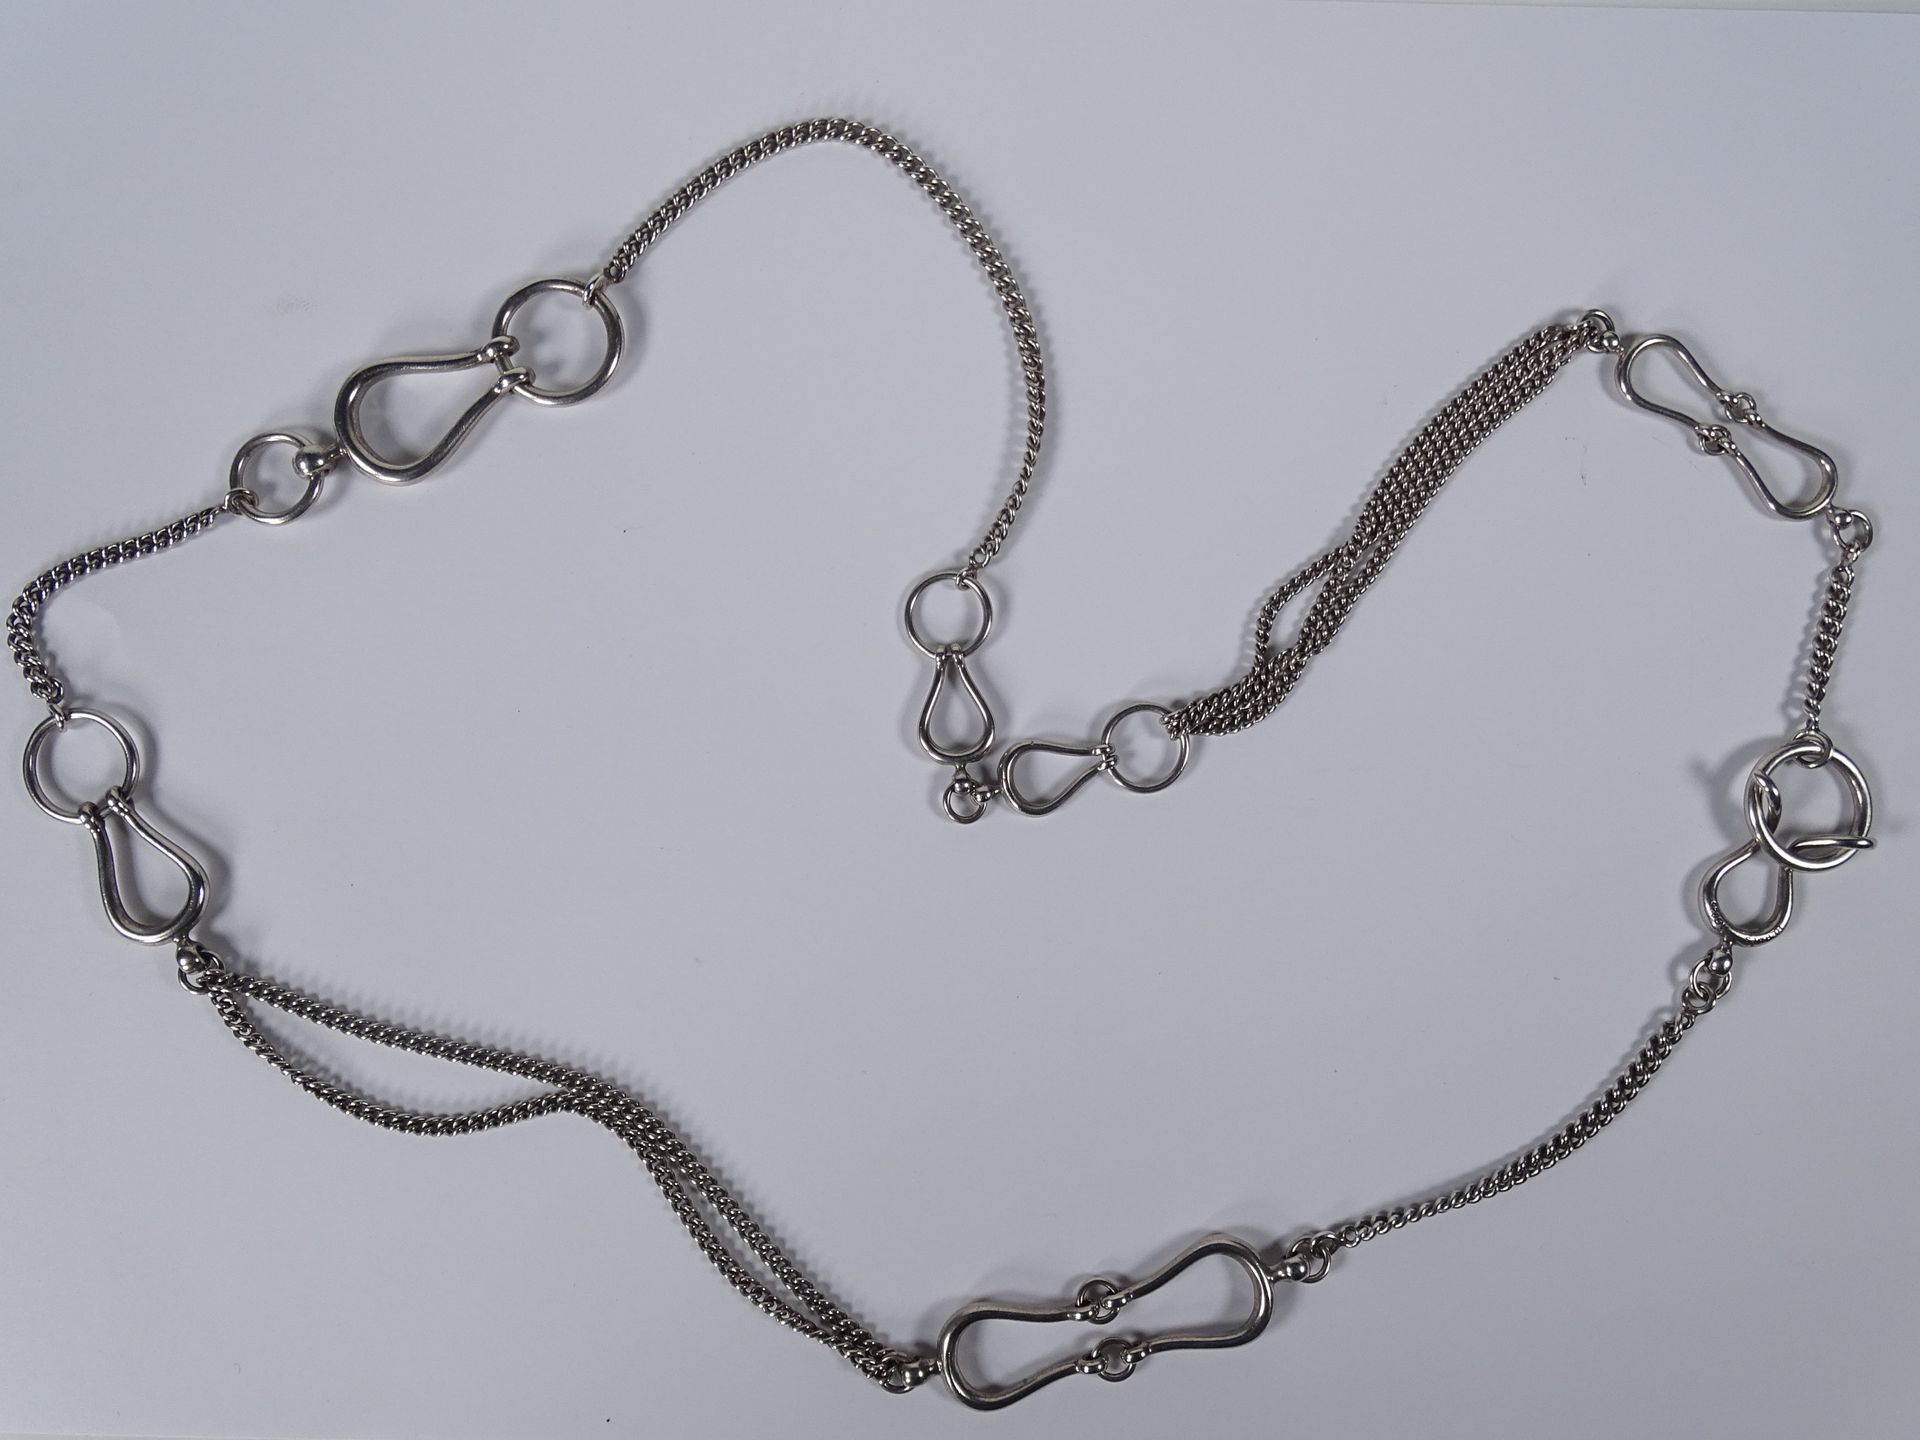 HERMES 银质项链，有合成的碎片。

长度：80厘米。

毛重：54.86克。